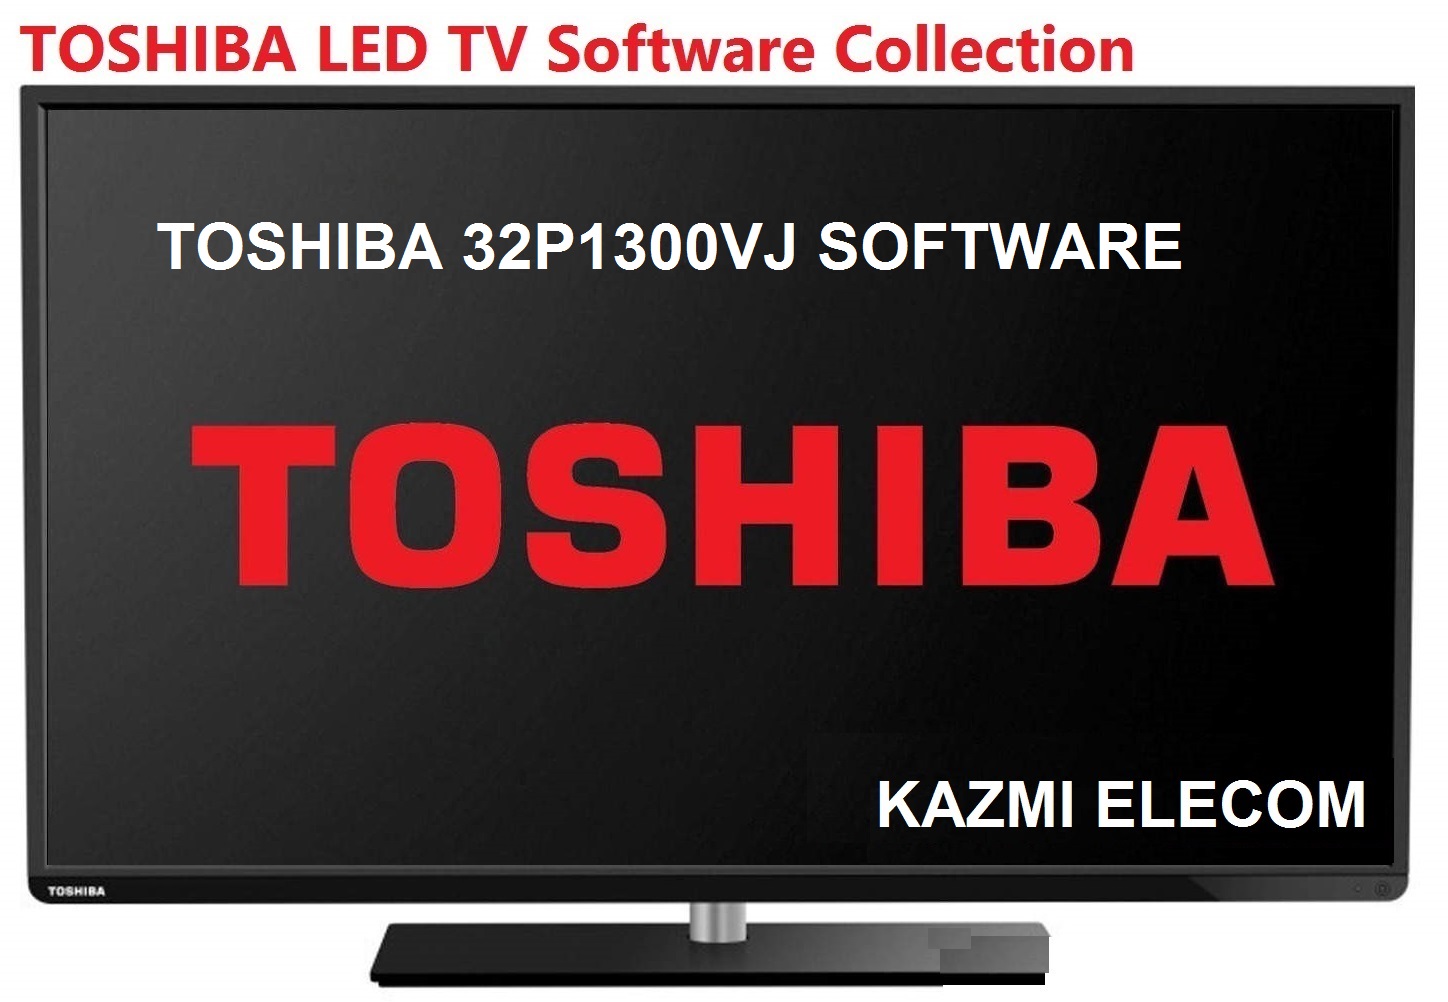 Toshiba 32P1300Vj